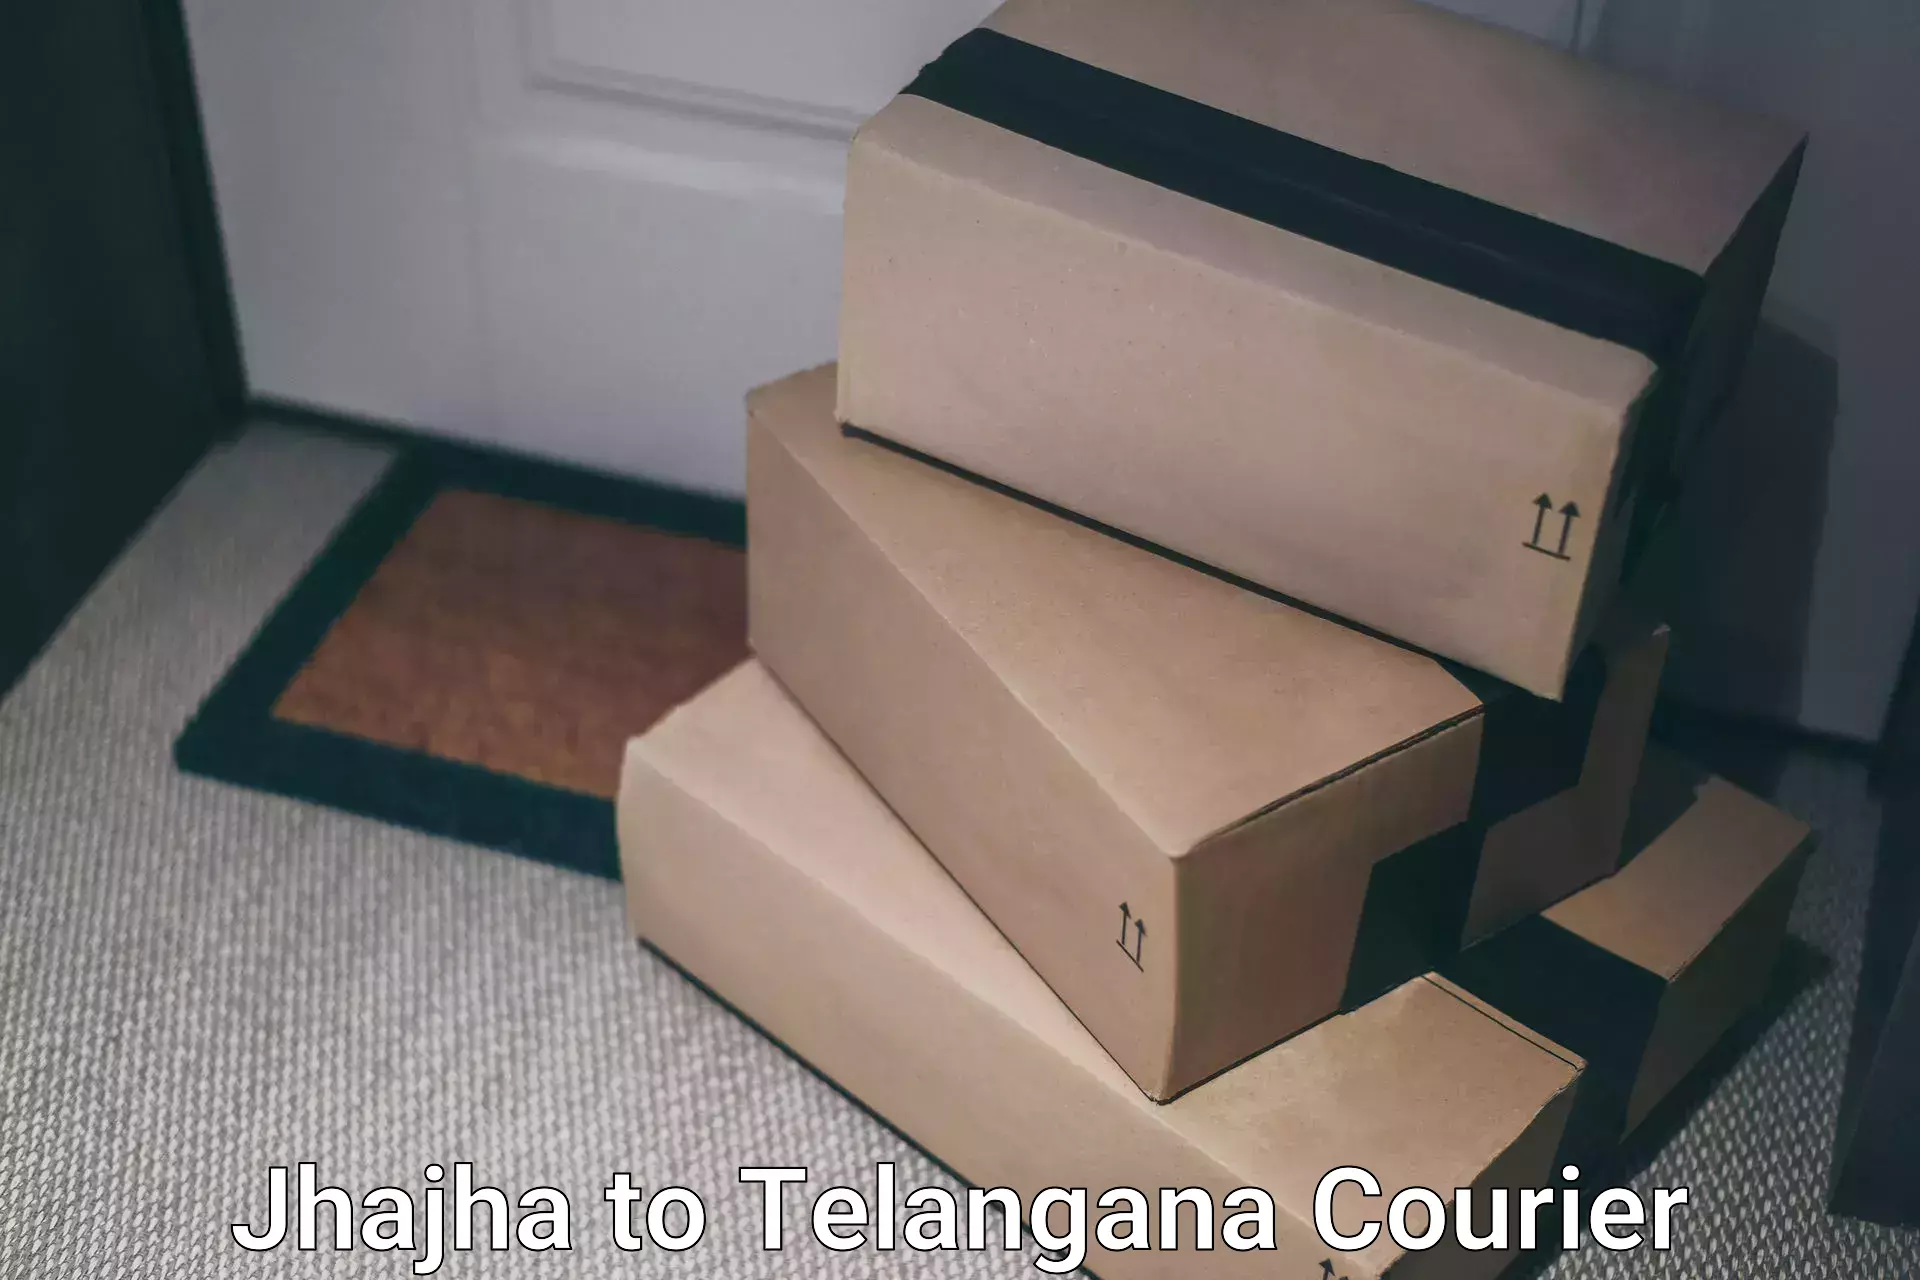 Courier service comparison Jhajha to Netrang